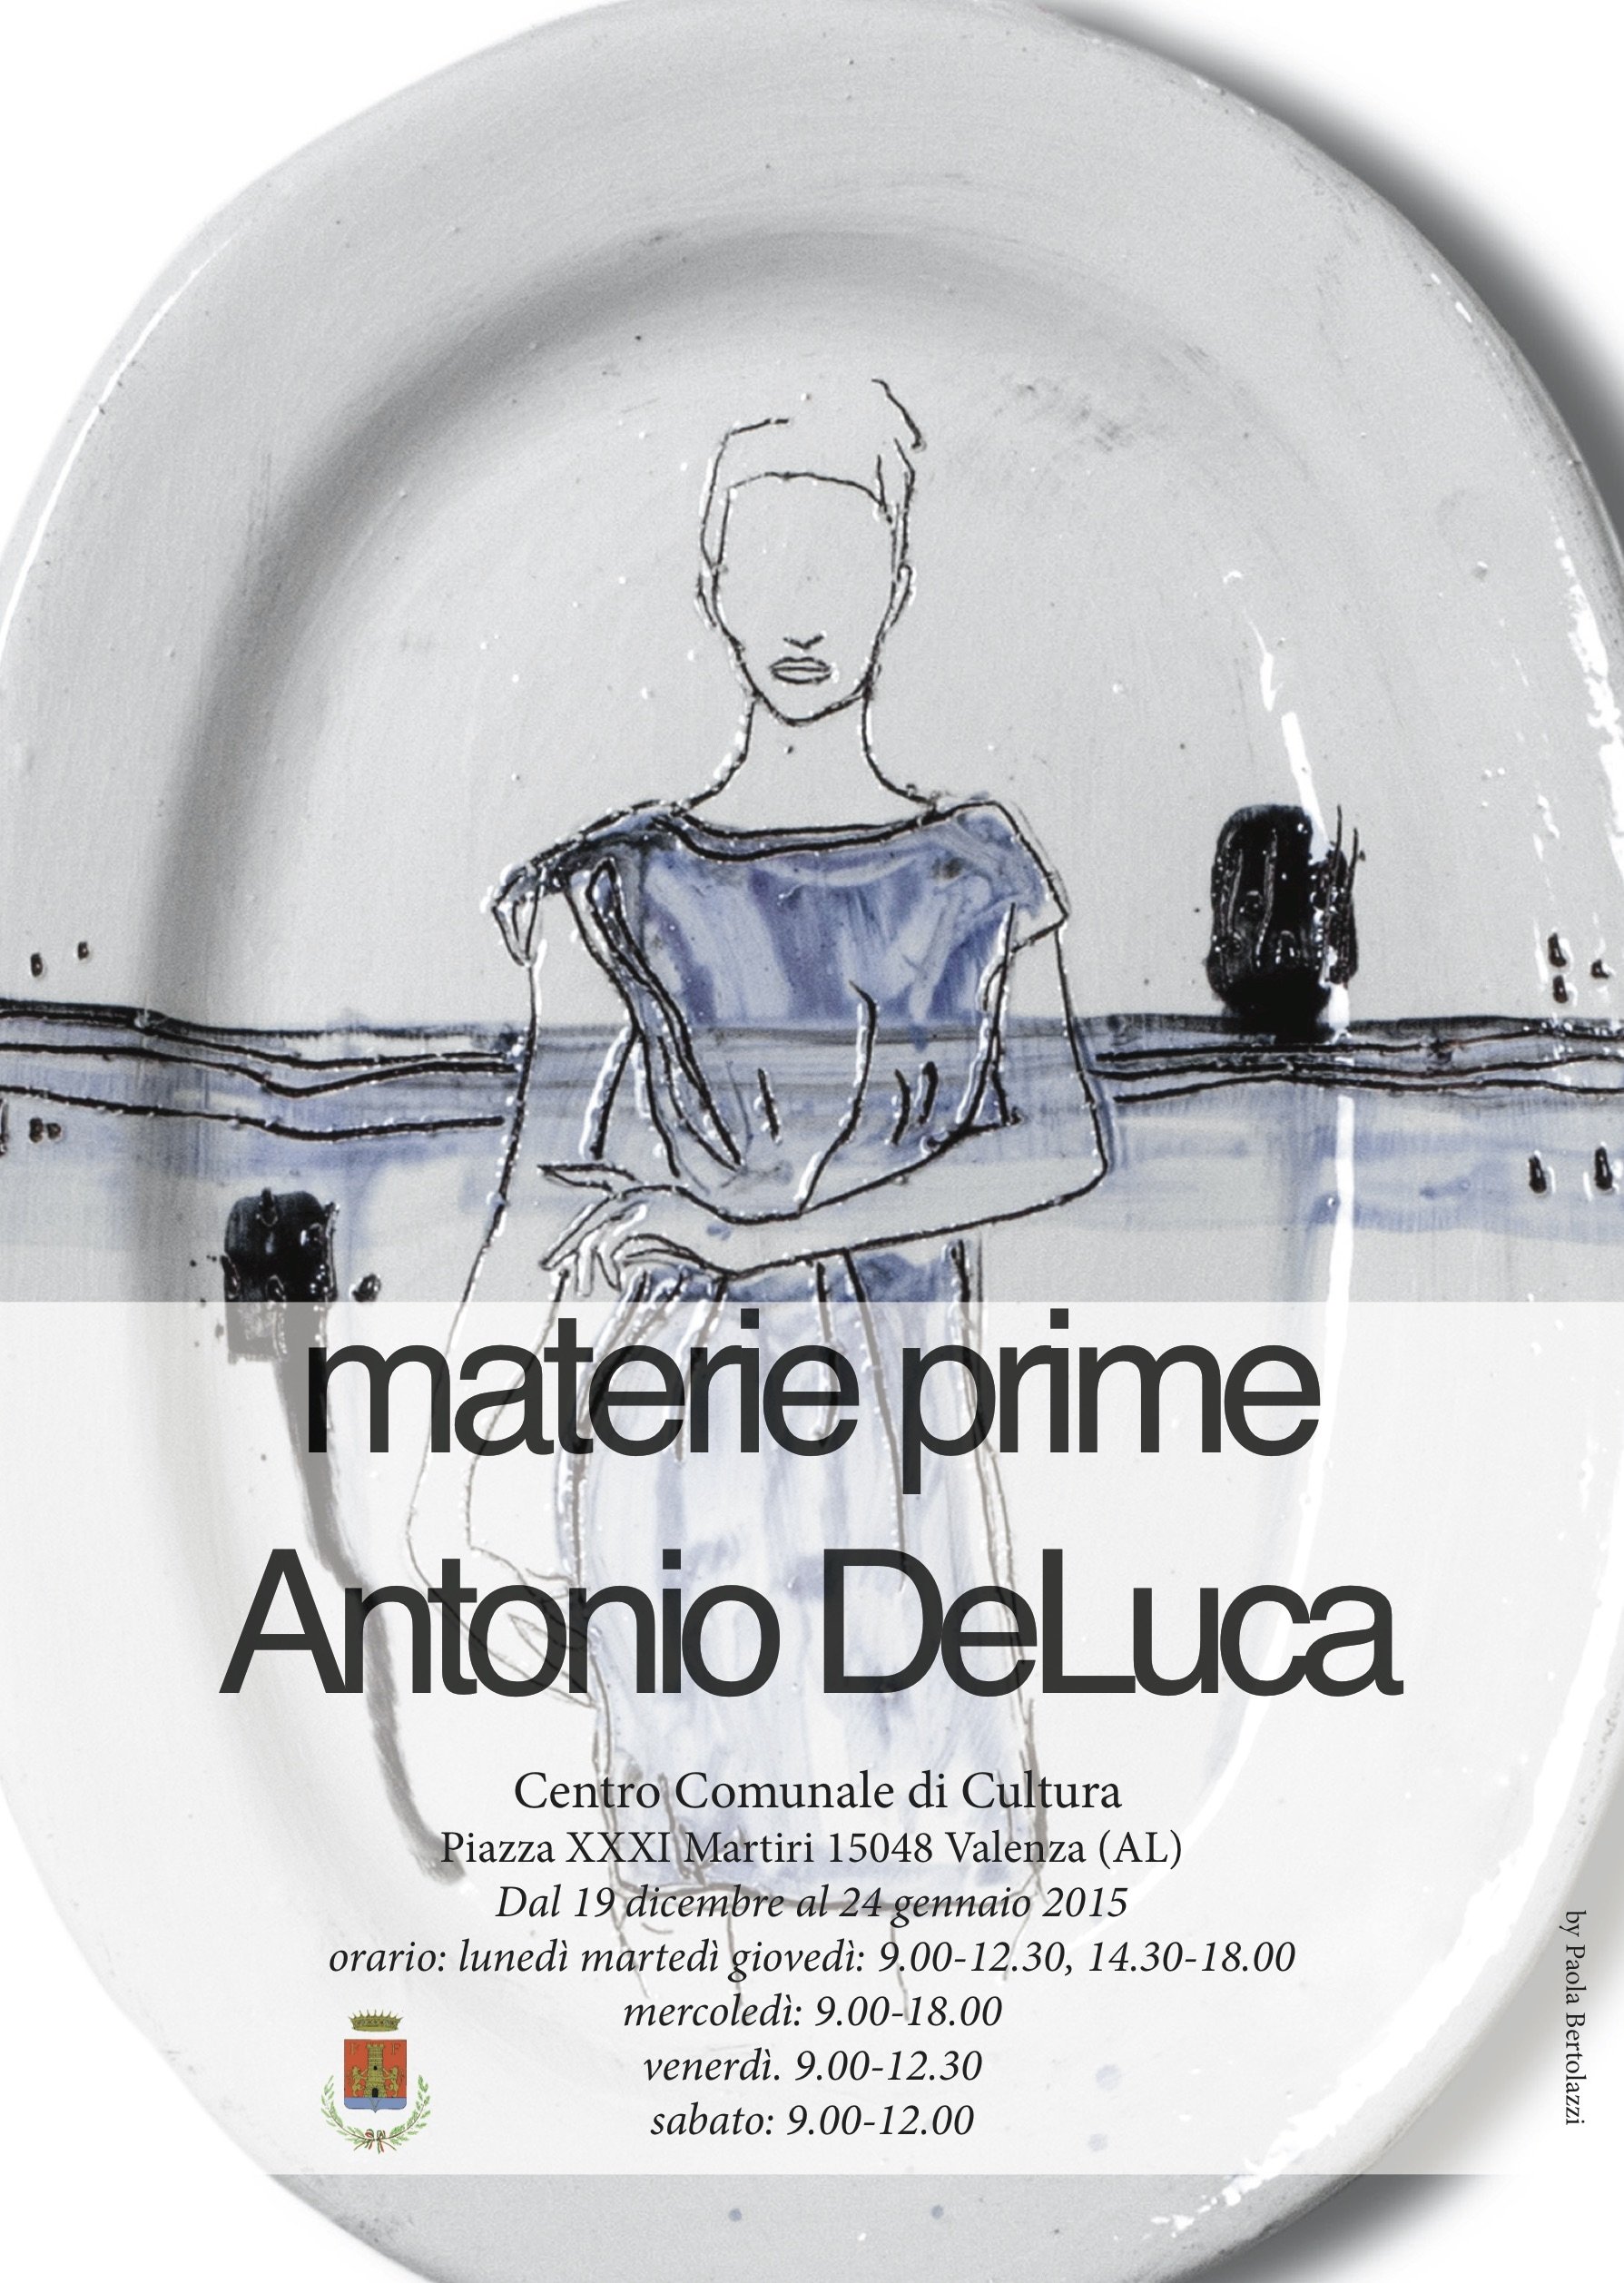 Le Materie prime di Antonio De Luca a Valenza